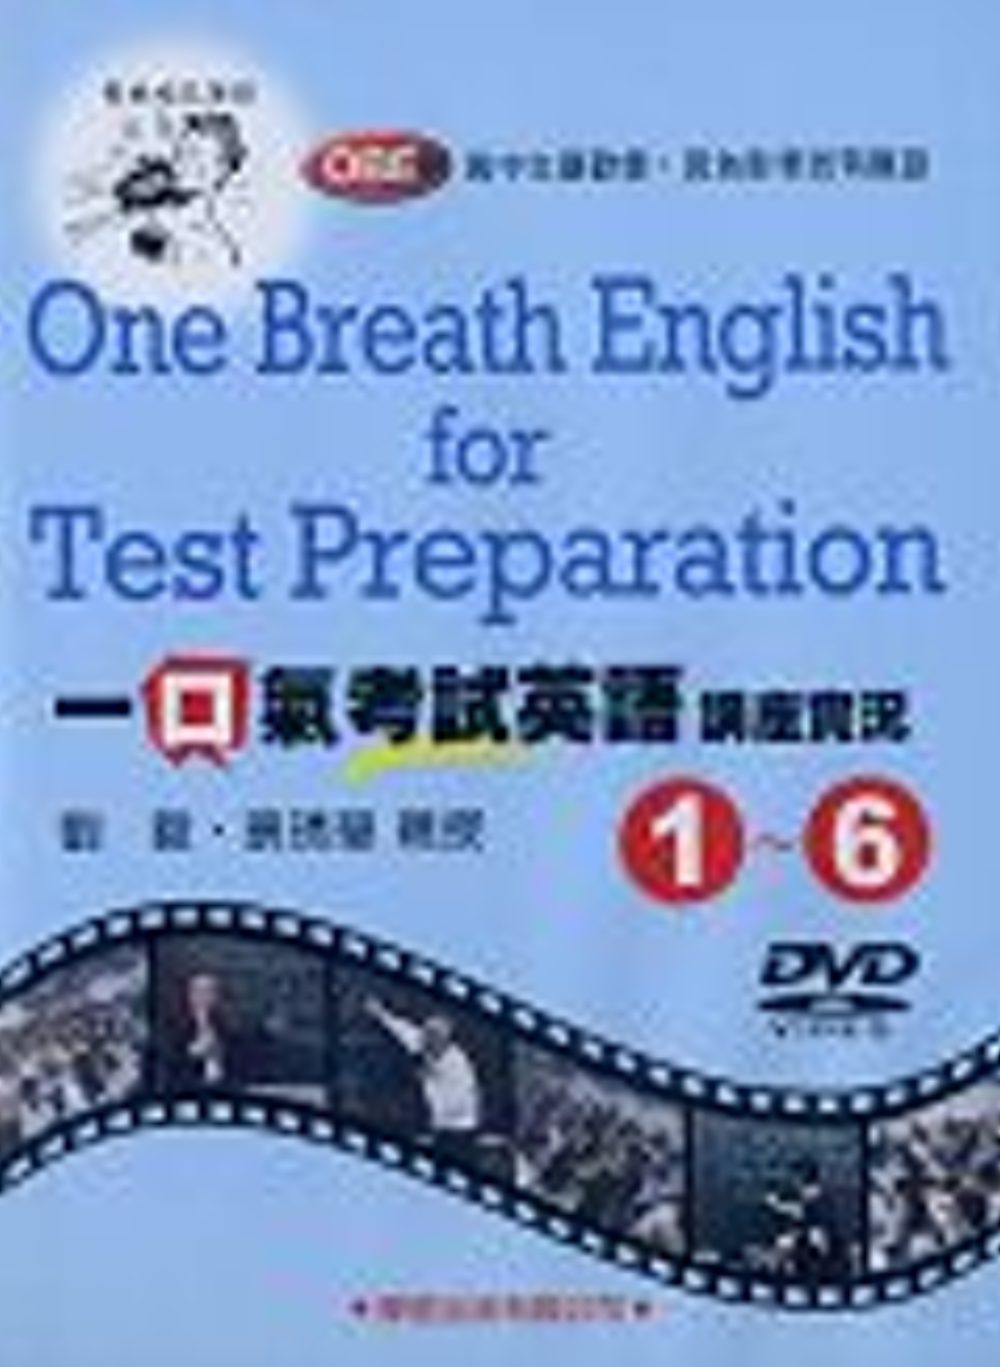 一口氣考試英語講座實況(1)~(6)DVD